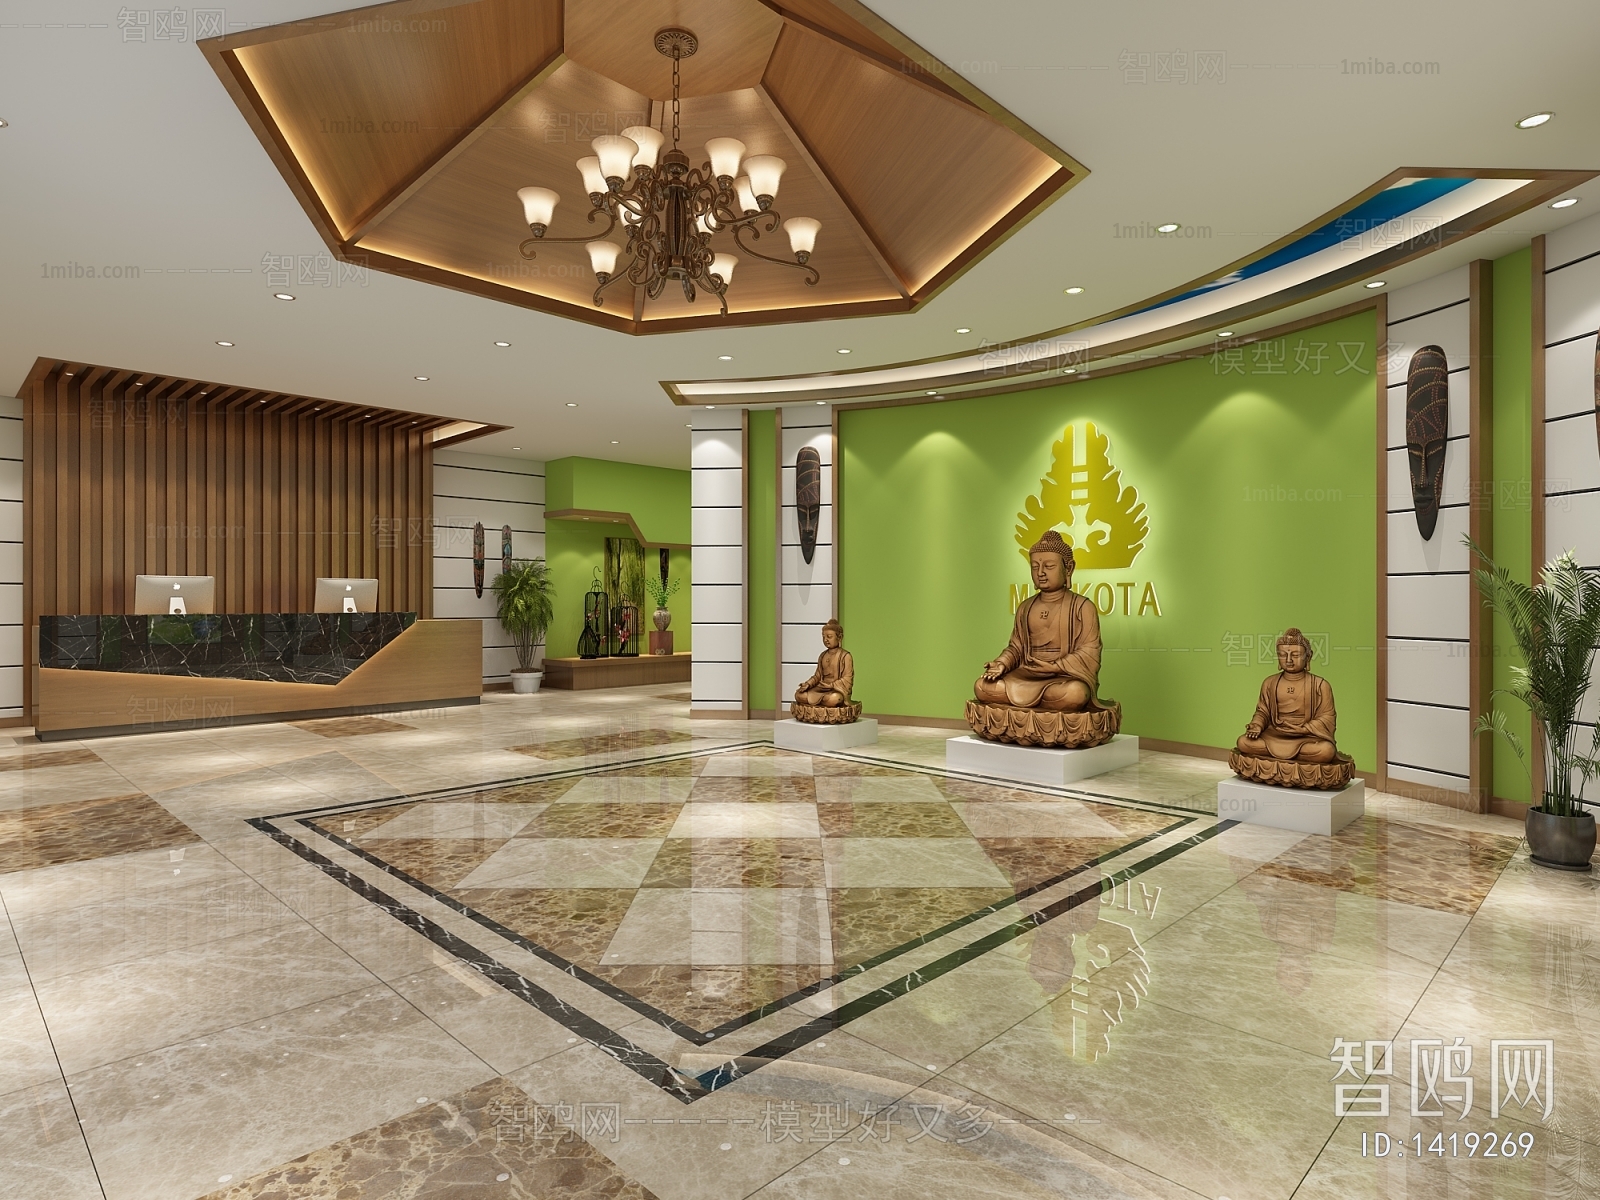 东南亚酒店大堂-3D模型-模匠网,3D模型下载,免费模型下载,国外模型下载